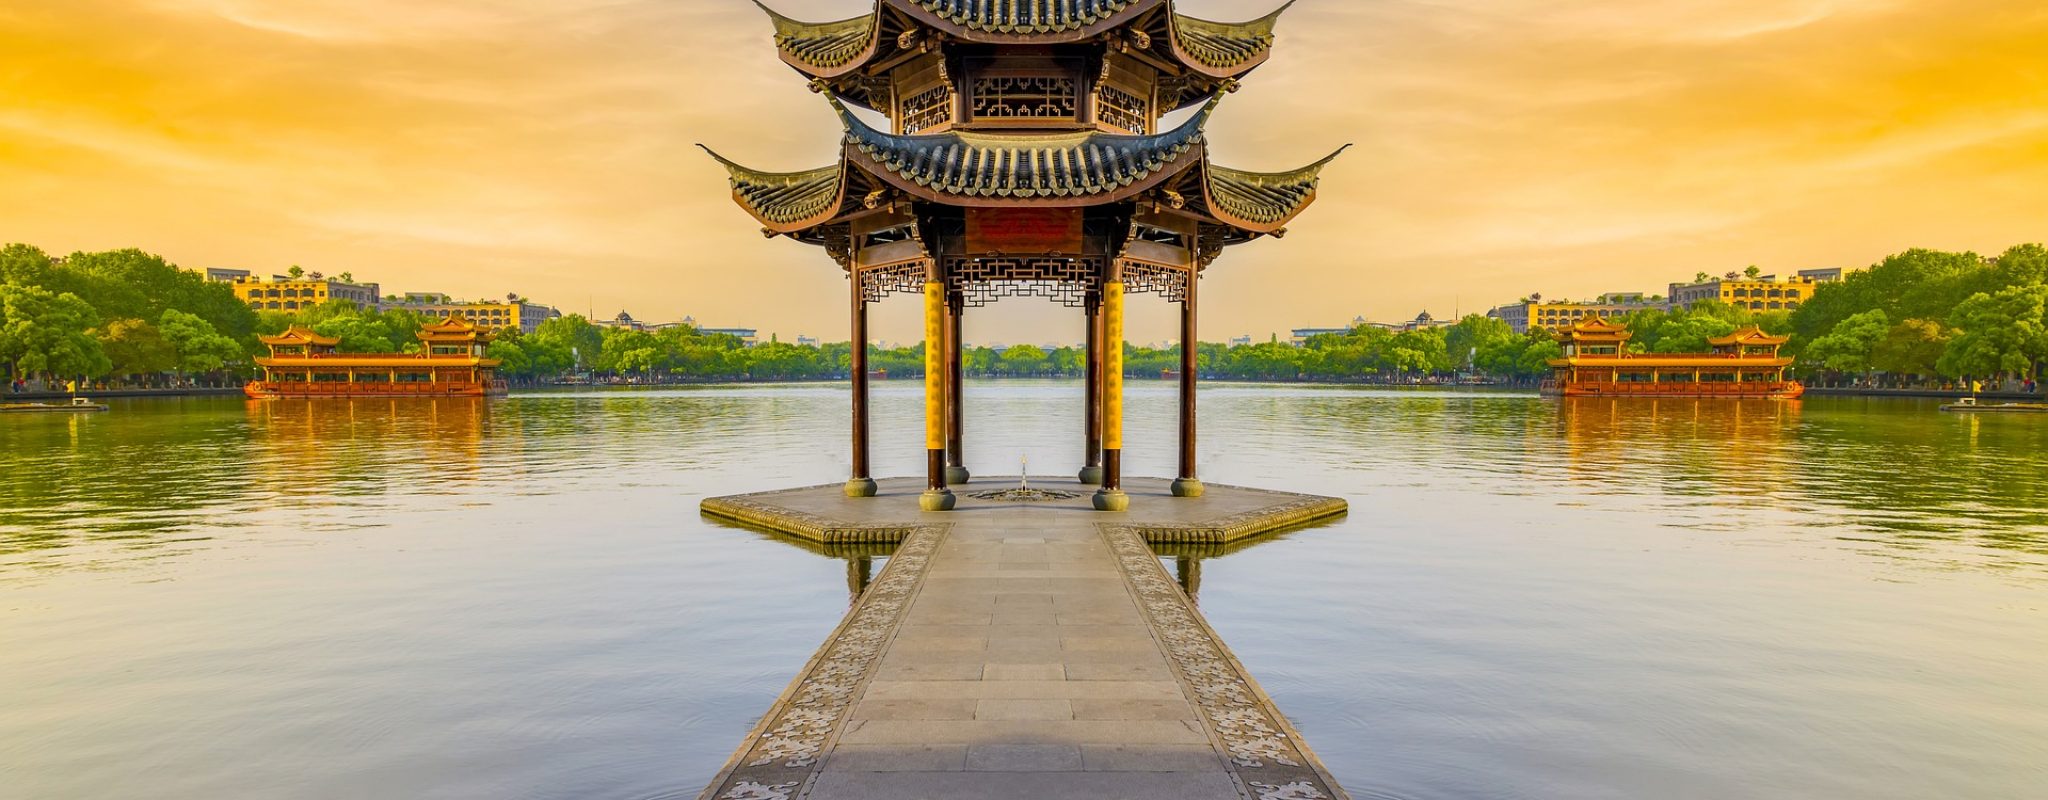 chinesischer Pavillon im See